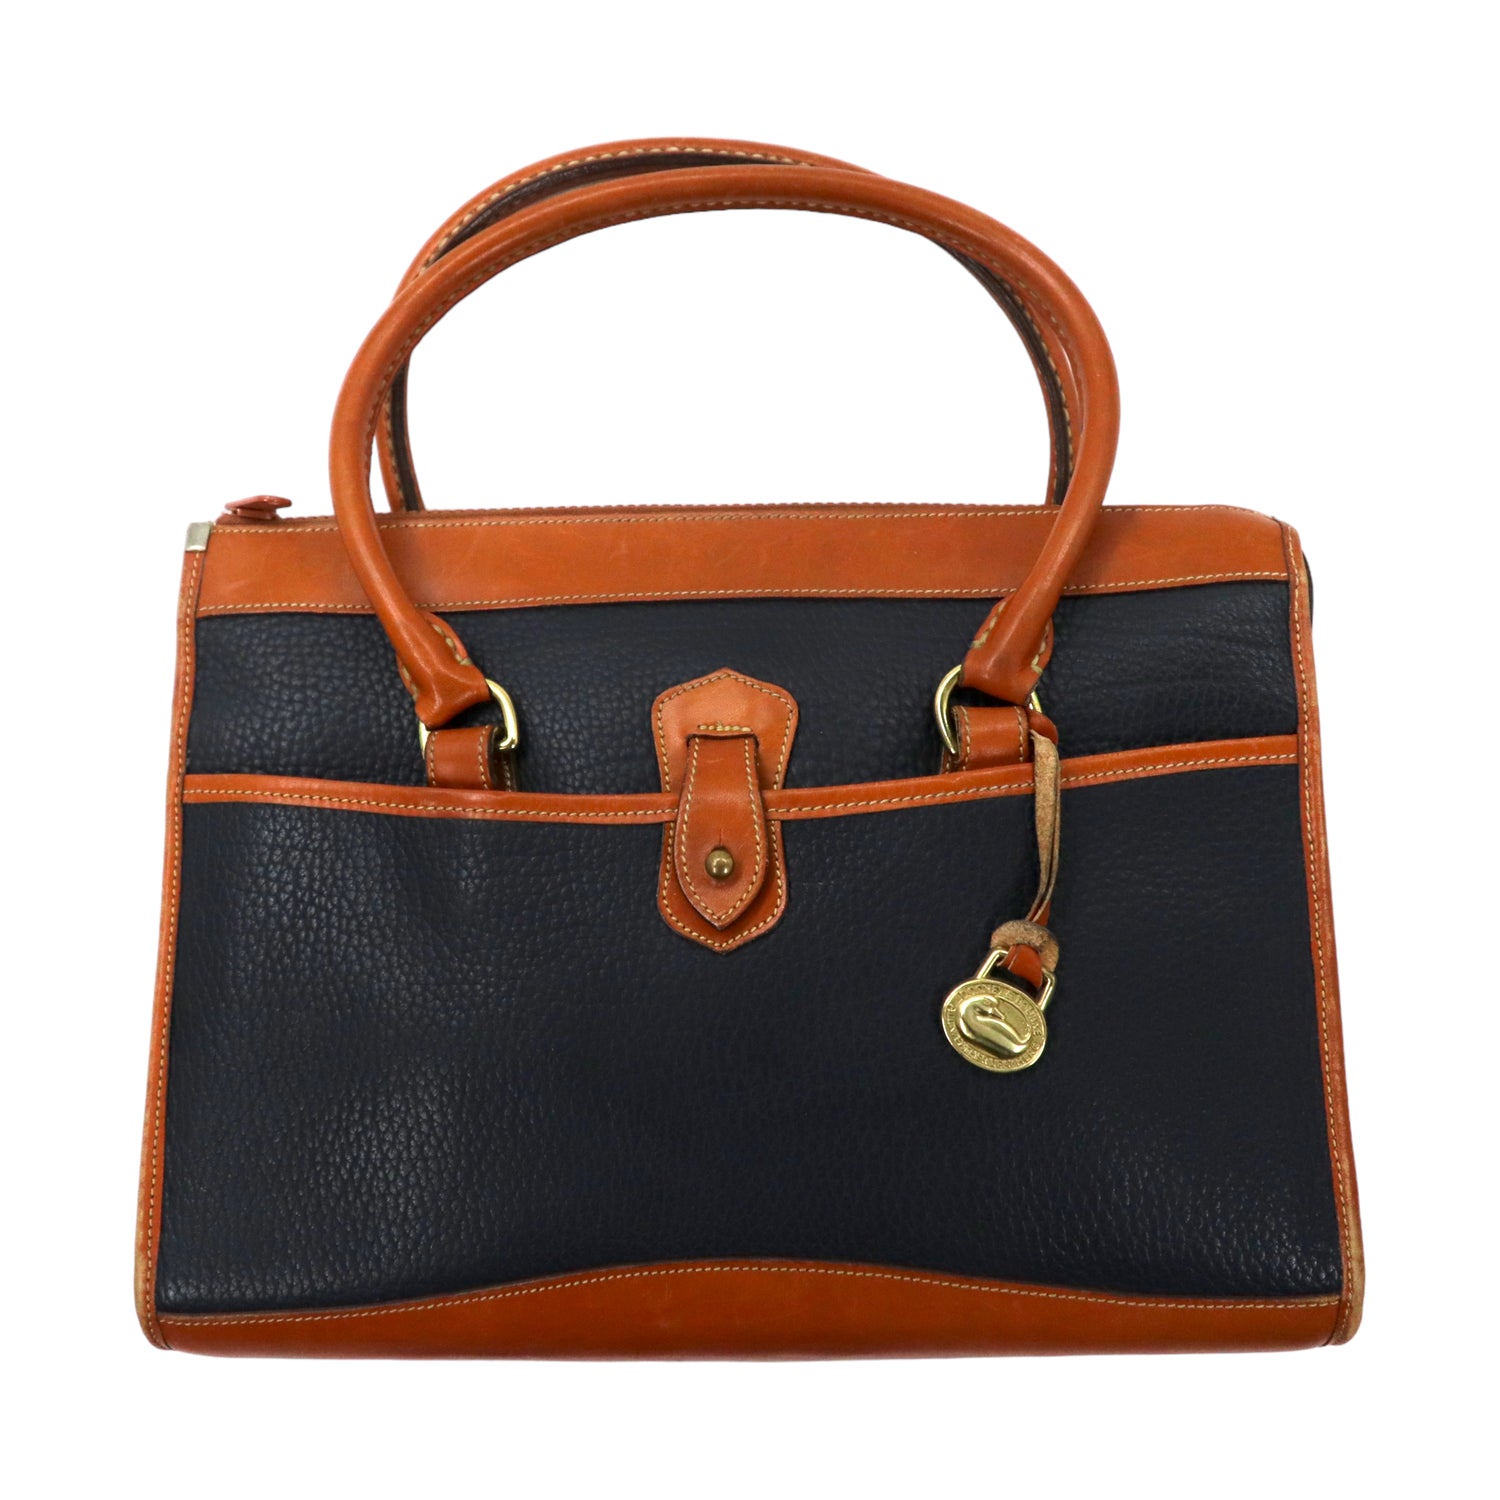 USA MADE DOONEY & BOURKE Briefcase Handbag Brown Navy Leather